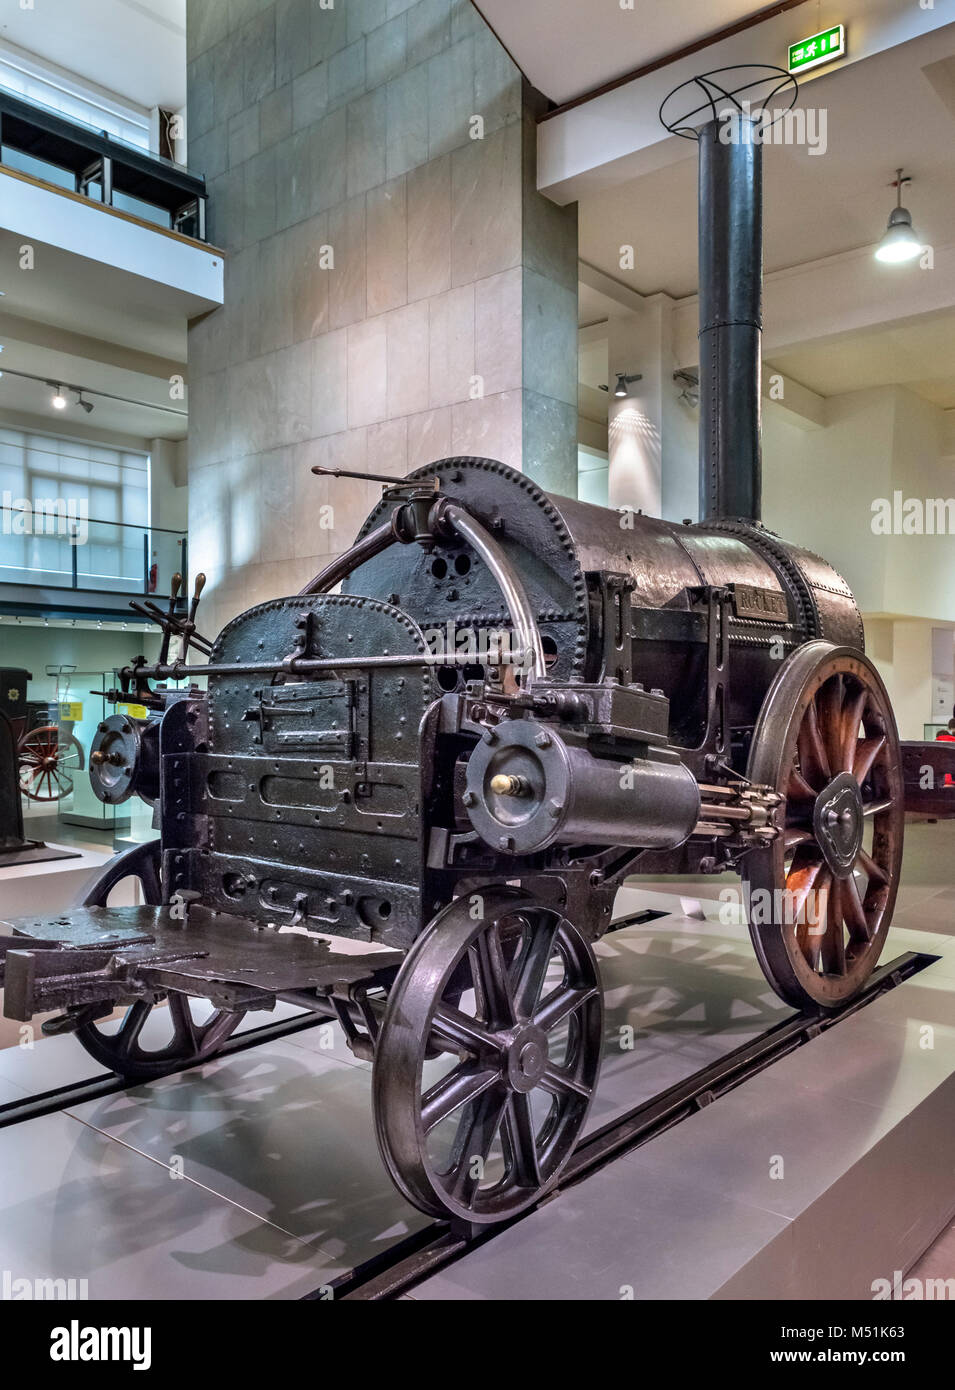 Stephenson's Rocket, la première locomotive à vapeur moderne construite par Robert Stephenson en 1829, maintenant dans le Science Museum, Londres Banque D'Images